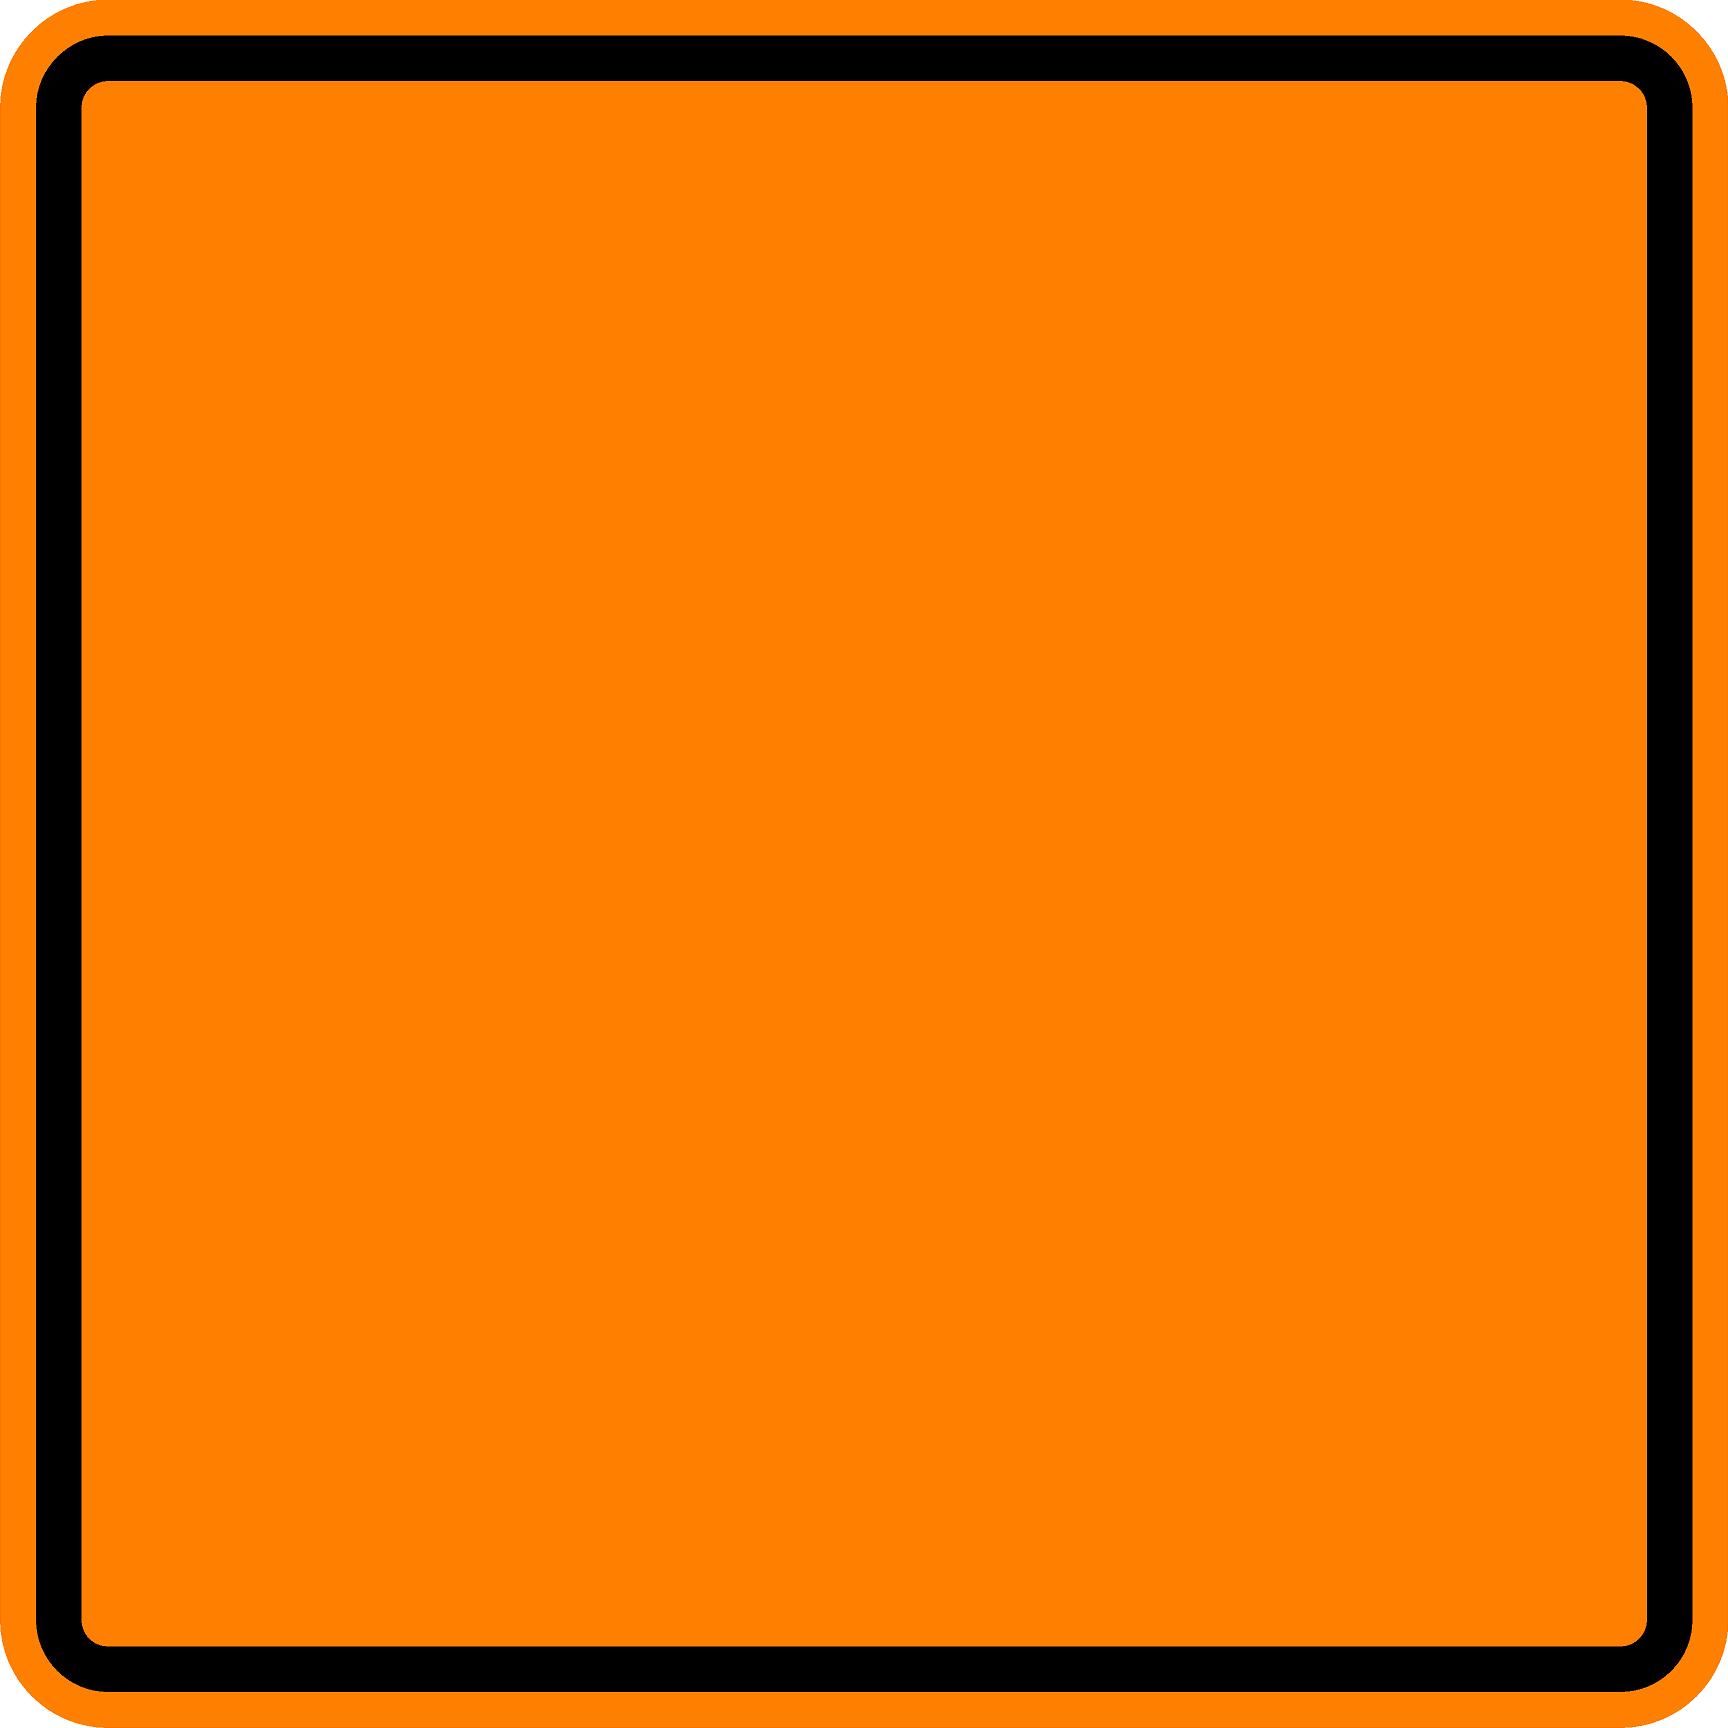 18" x 18" Custom Orange Square Sign. 